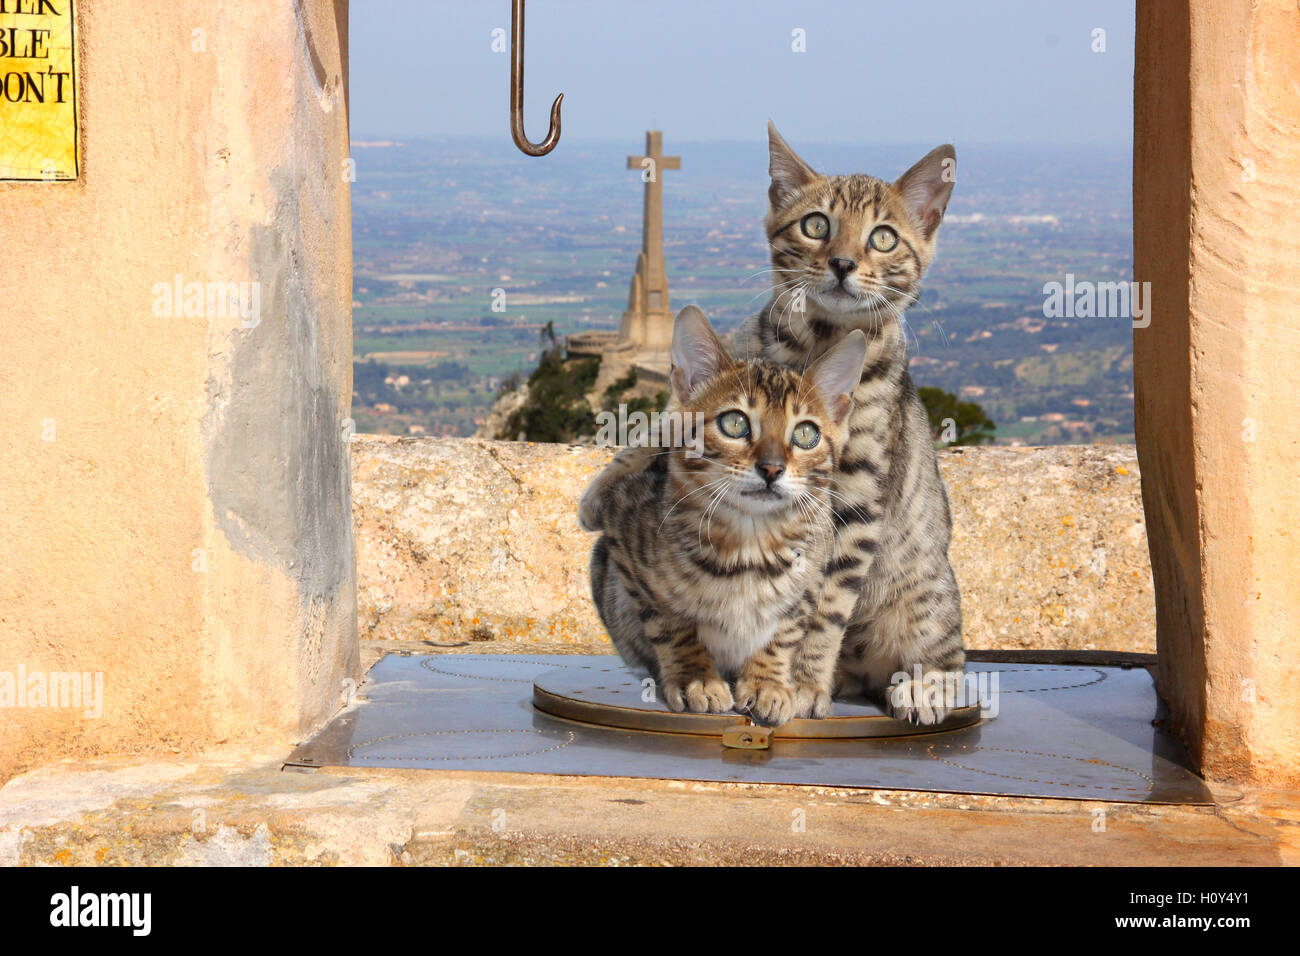 2 (due) bengala gattini seduto su una fontana coperto in un monastero, su una montagna, Spagna, Mallorca, Sant Salvador Foto Stock